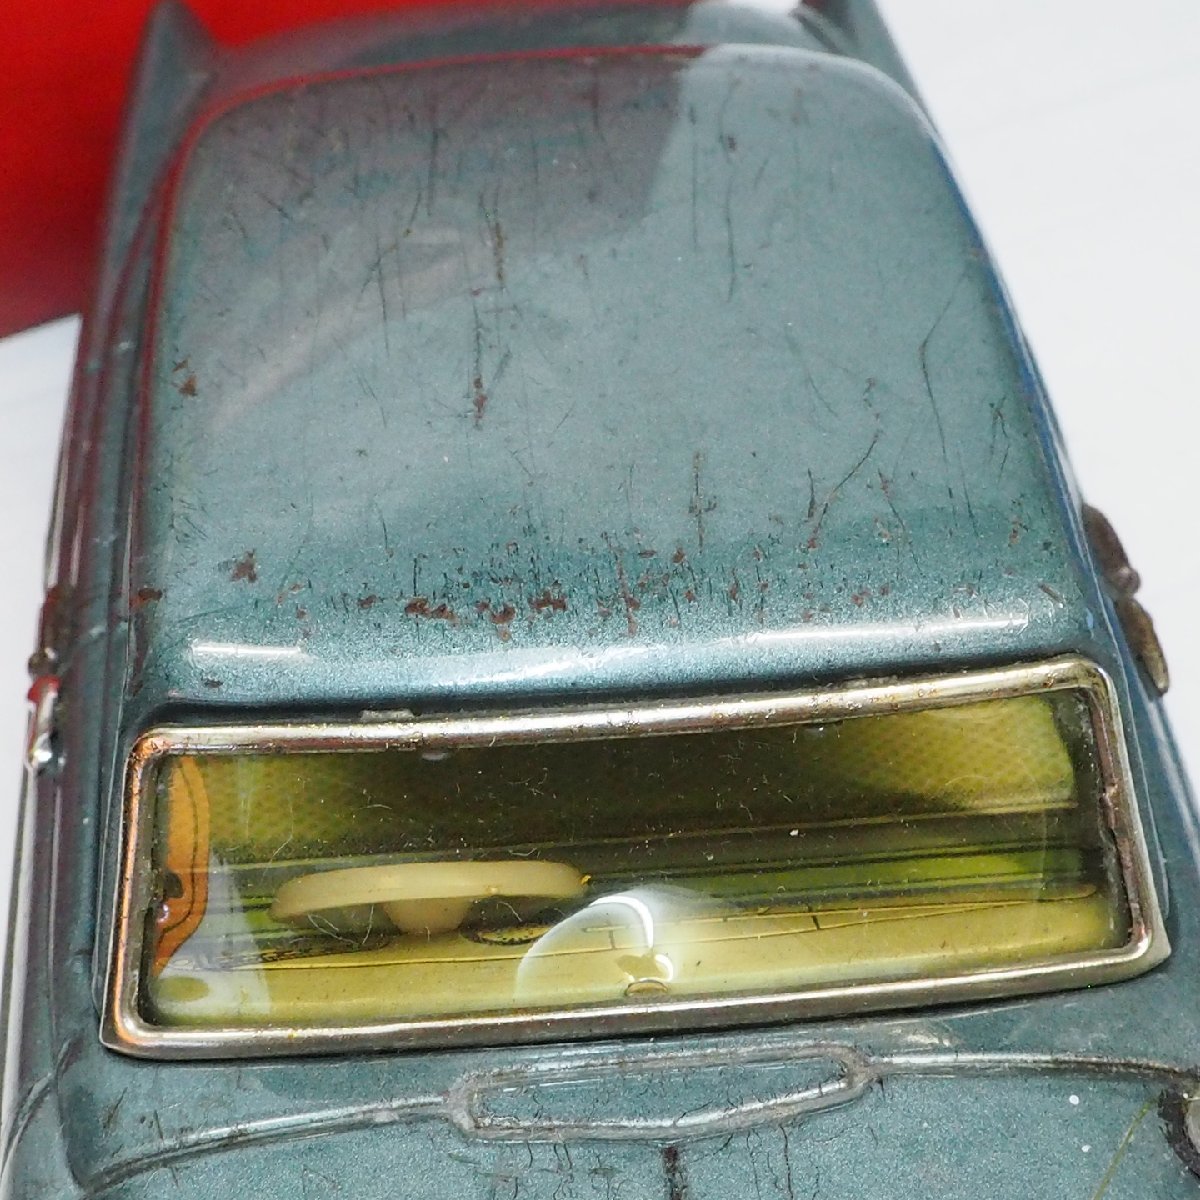 . плата магазин [TOYOPET CROWN DELUXE Toyopet Crown Deluxe синий зеркало есть ] жестяная пластина tin toy car автомобиль #BC BANDAI красный коробка Bandai [ с ящиком ]0373